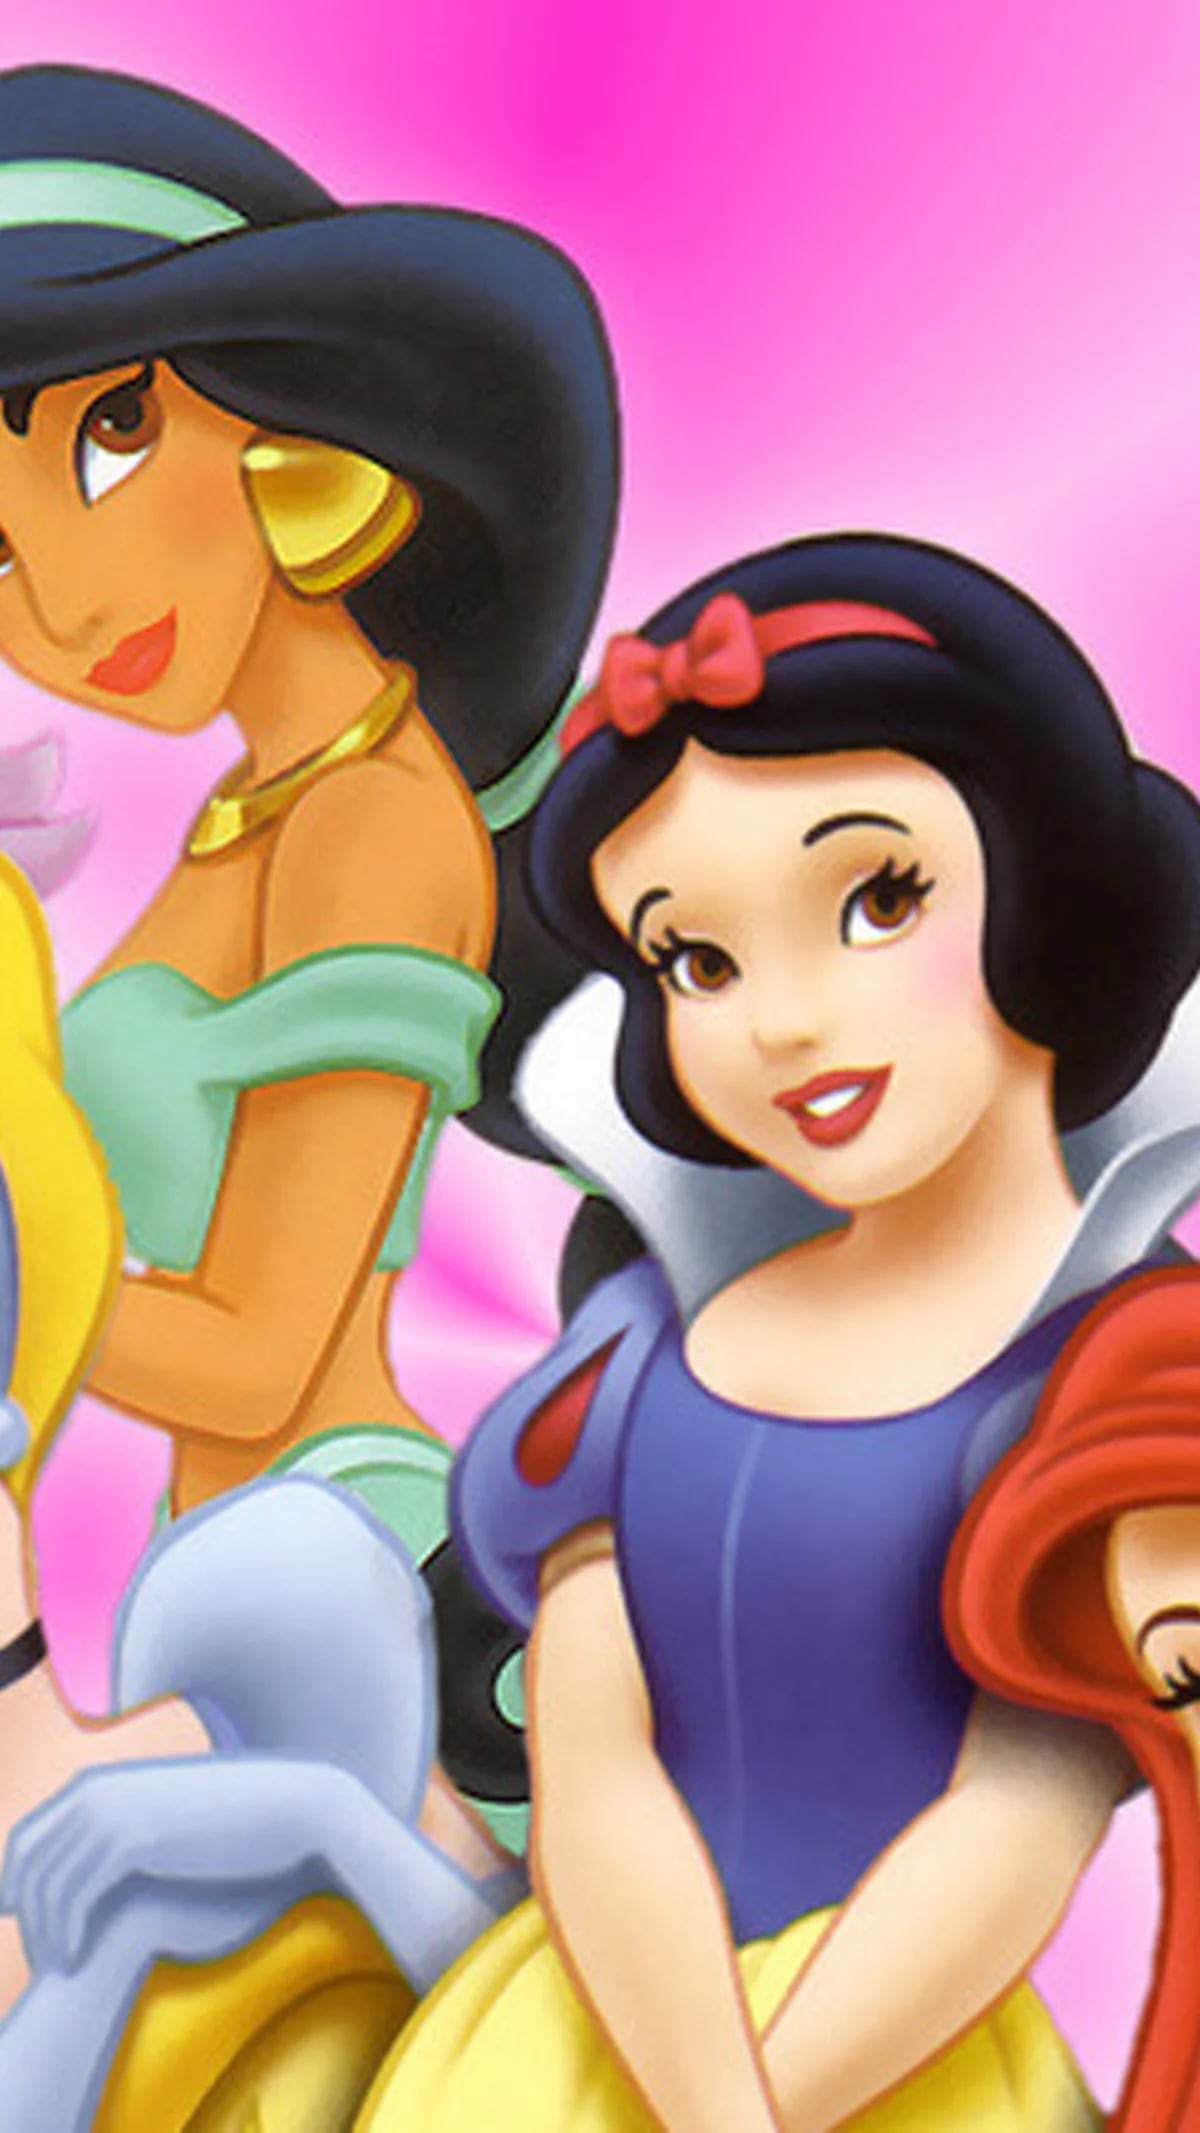 Son las princesas Disney buenos modelos de liderazgo? - Infobae